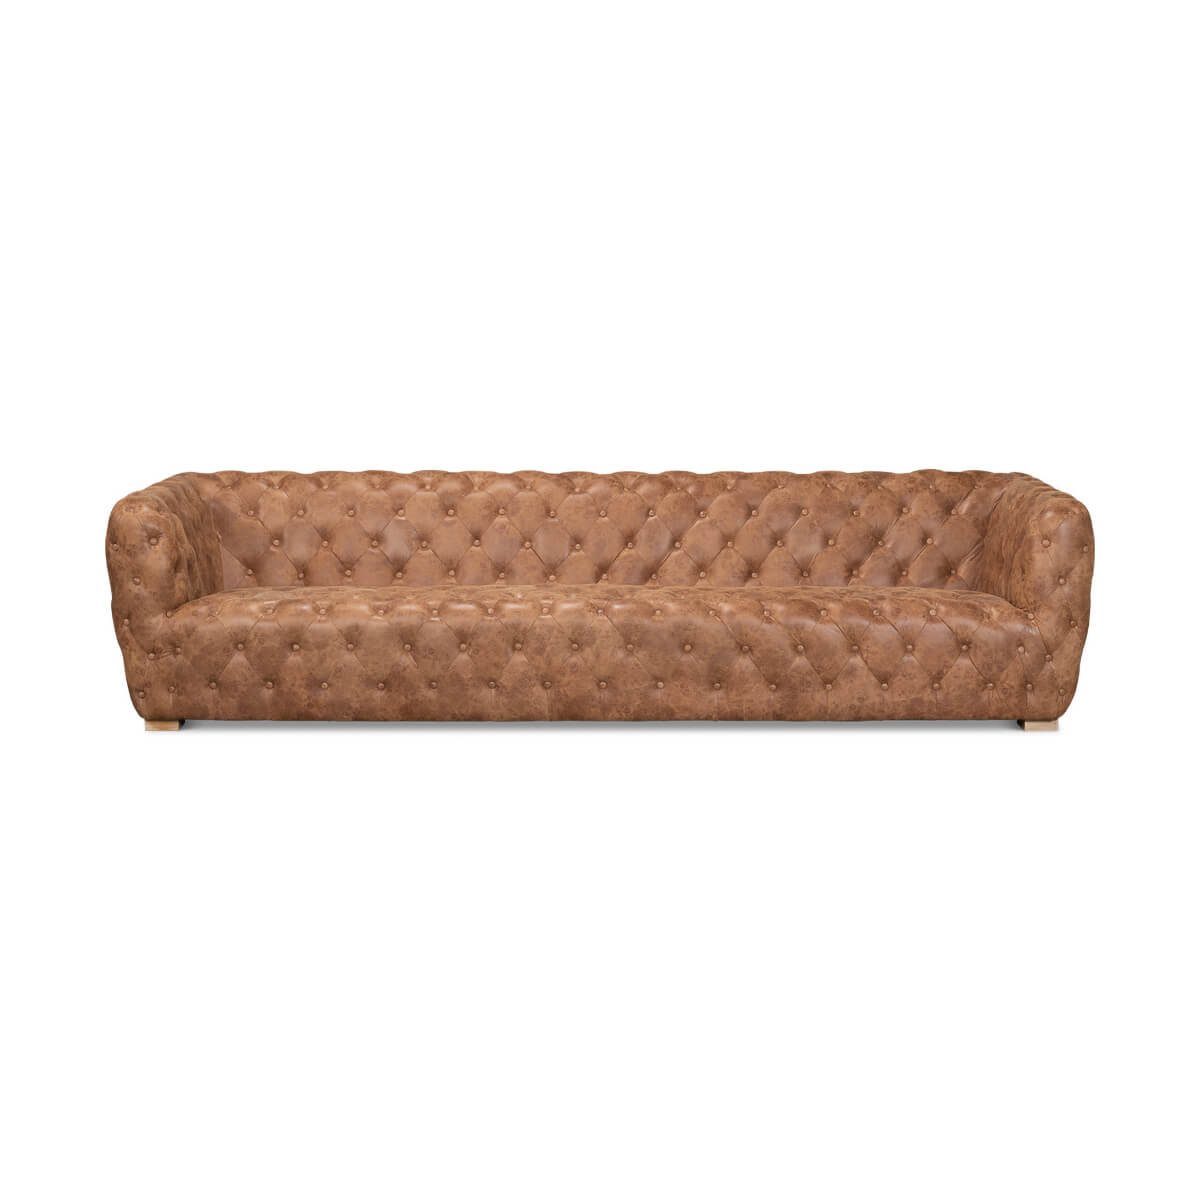 Contemporary Tufted Leather Sofa - English Georgian America